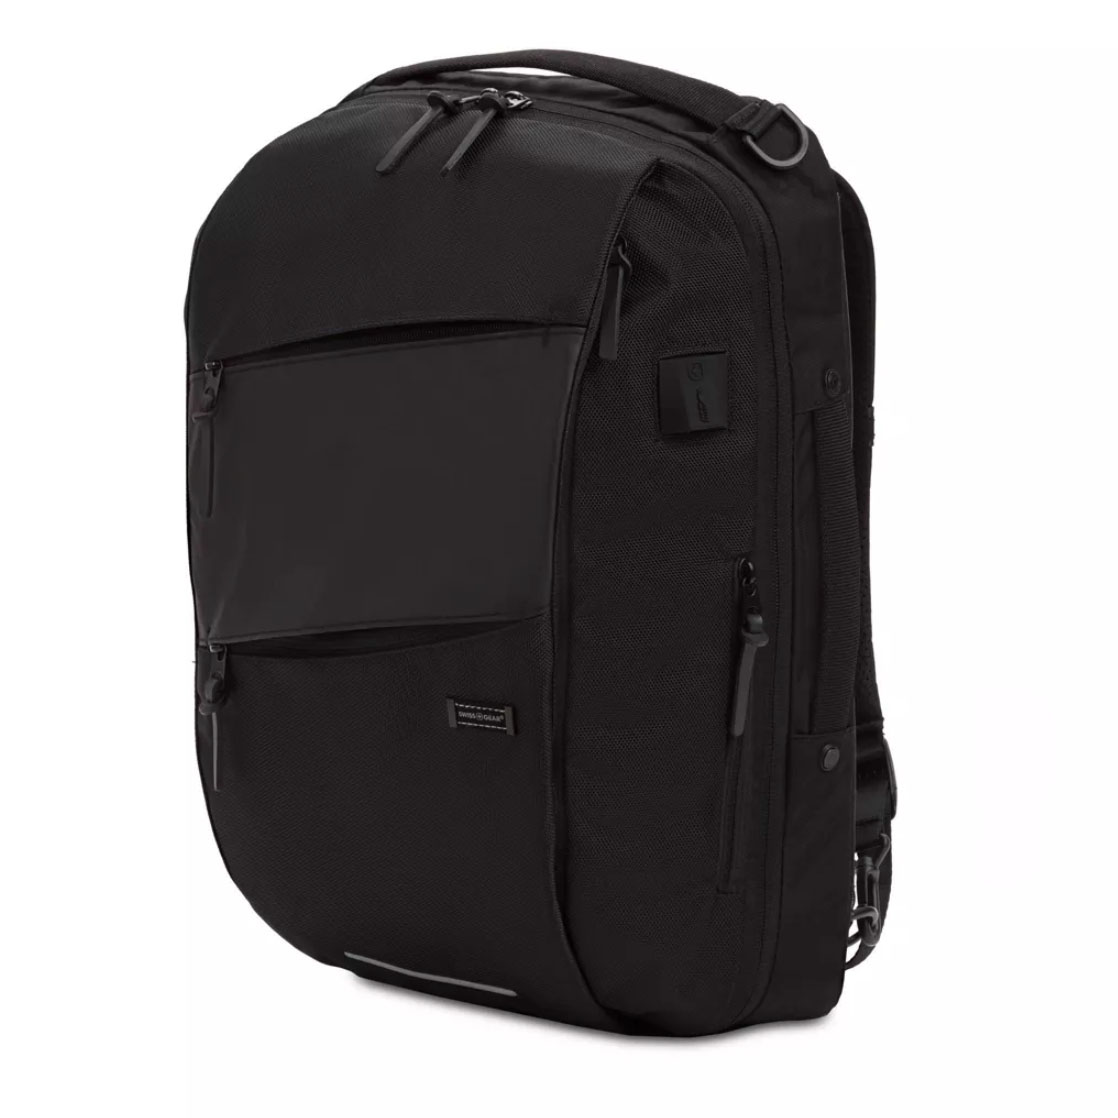 SWISSGEAR Hybrid 19" Backpack/Messenger in black